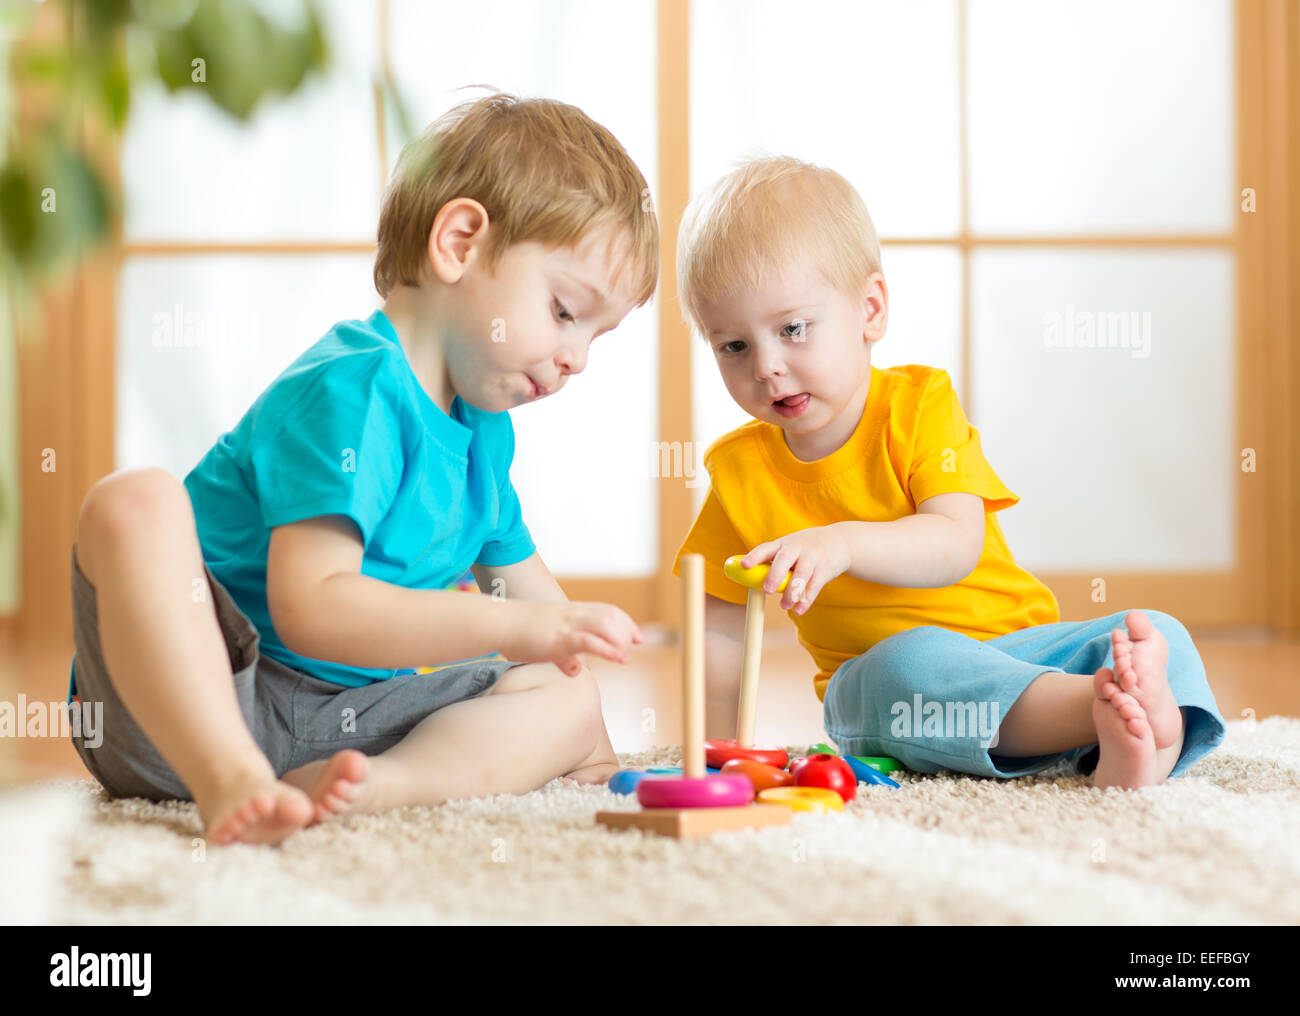 Bambini I ragazzi con i giocattoli in sala giochi Foto Stock